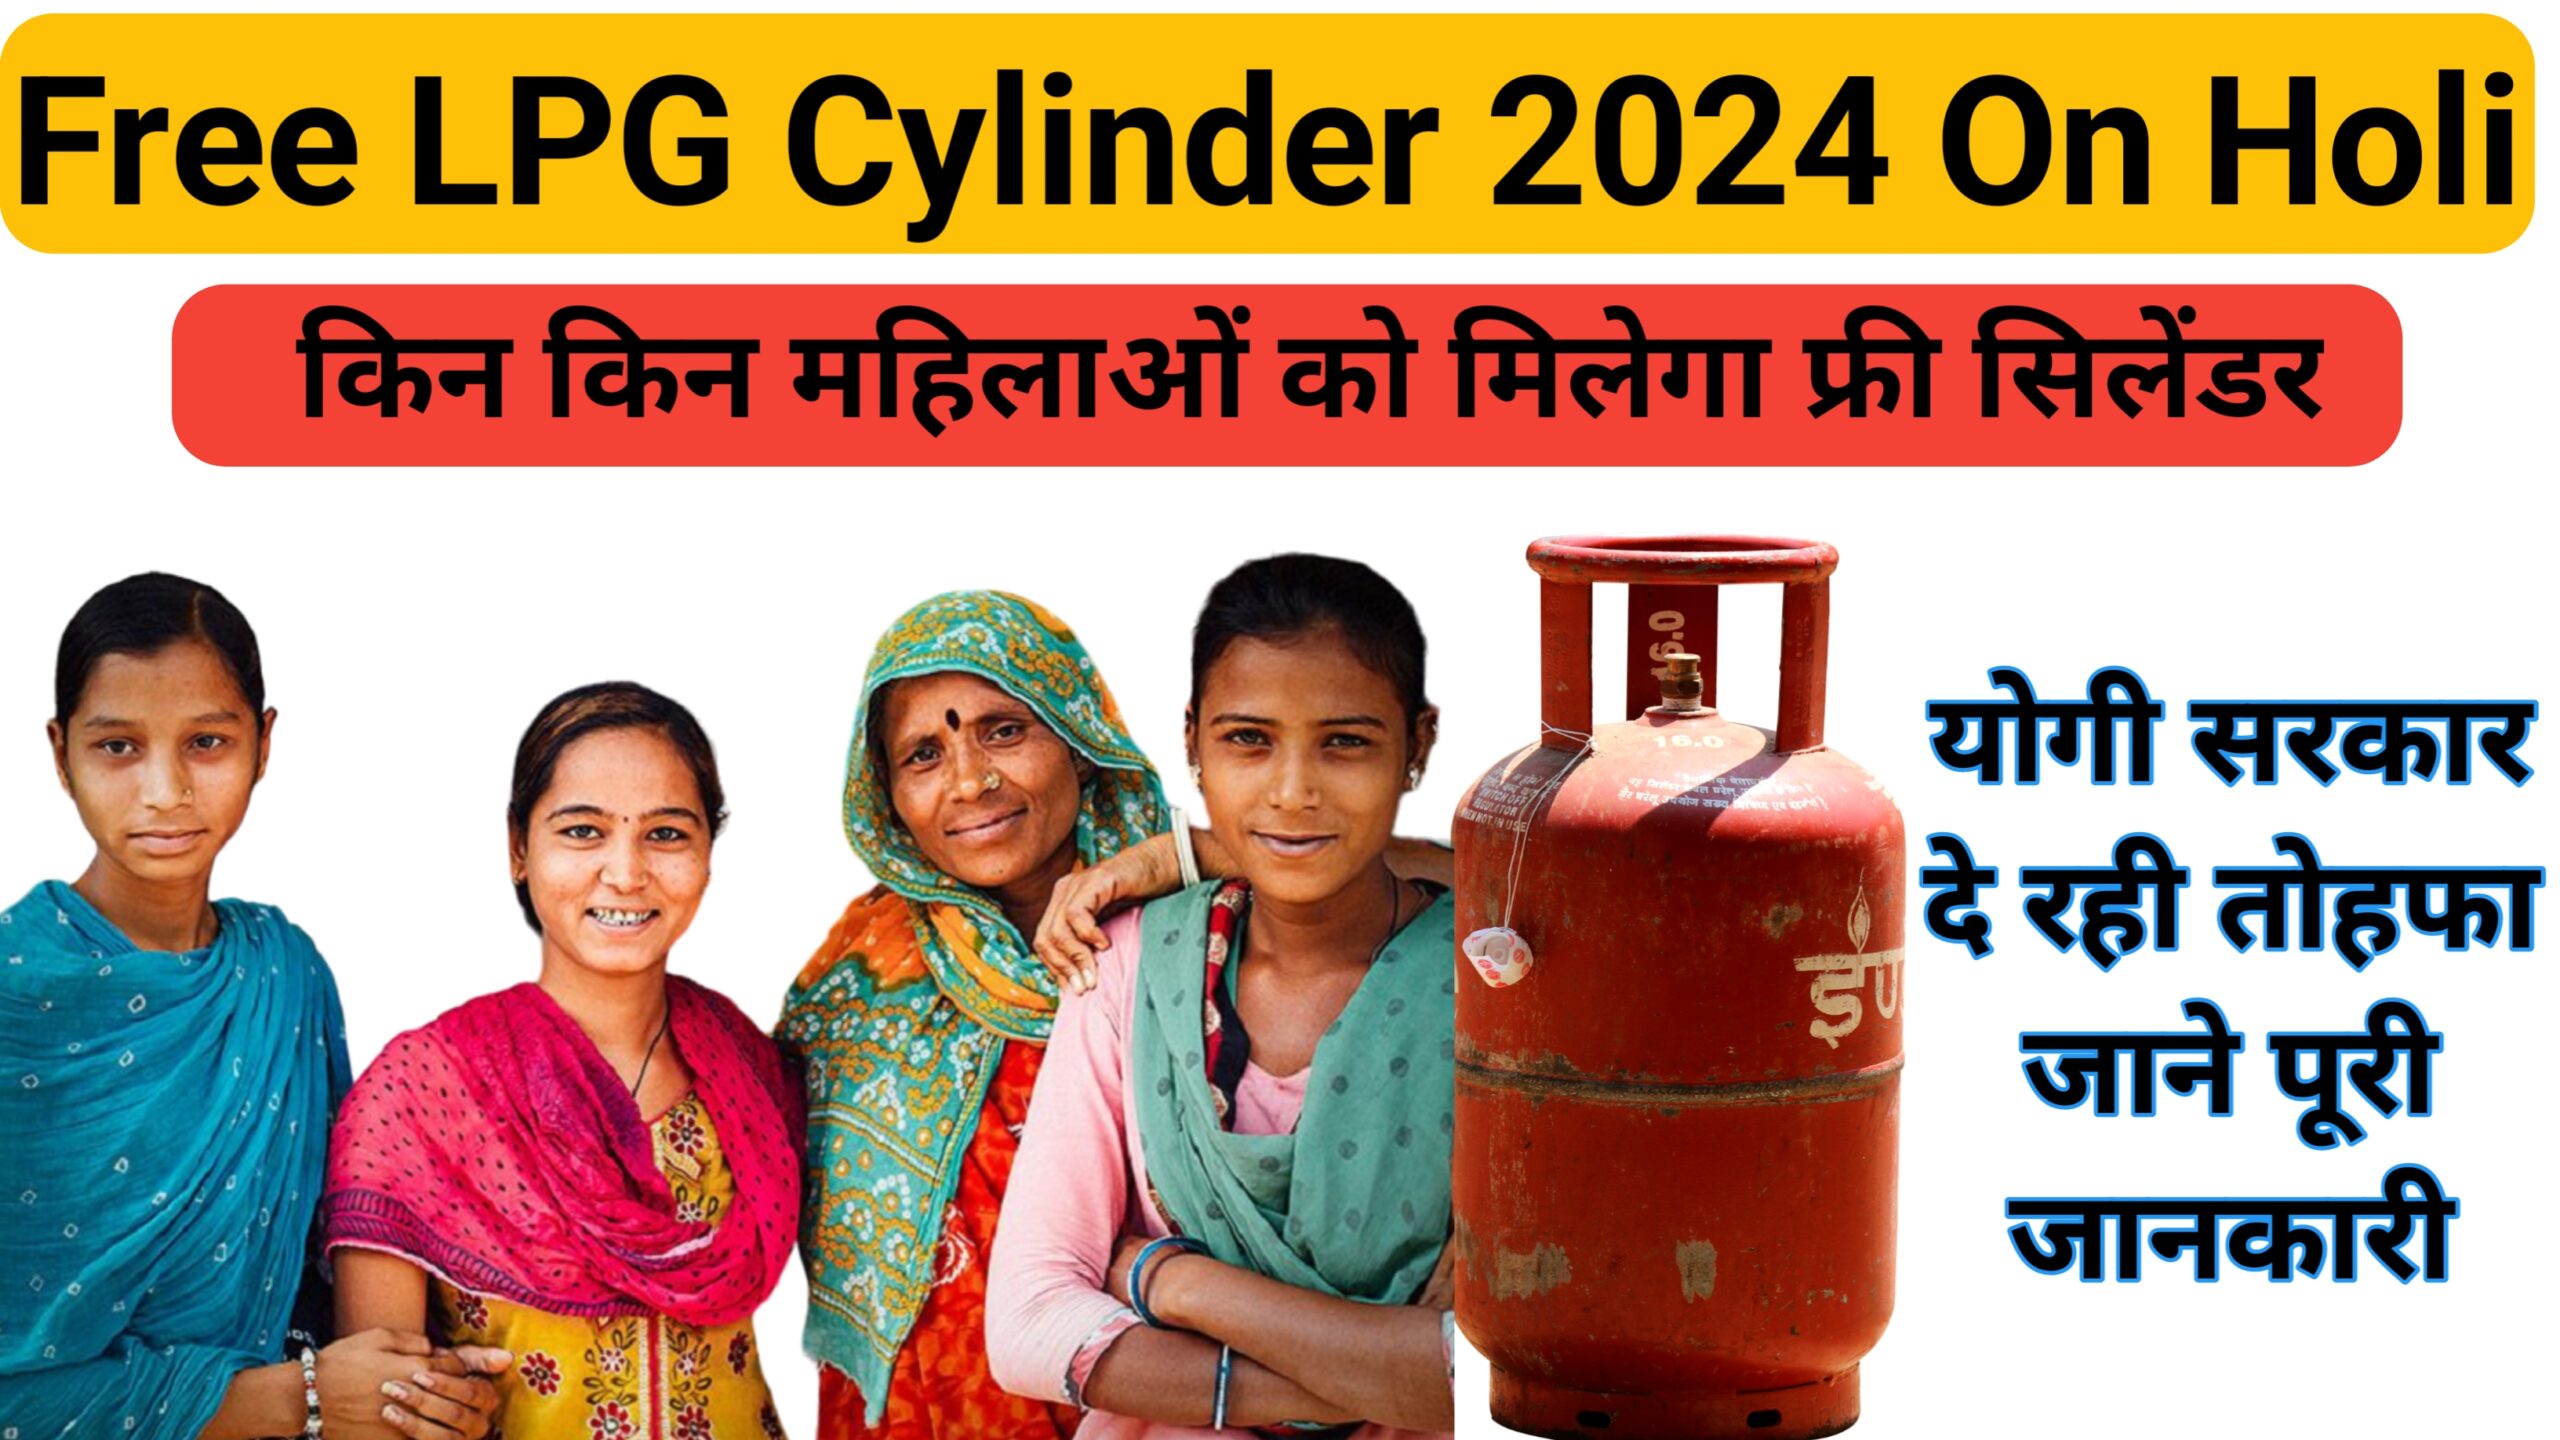 Free LPG Cylinder 2024 on Holi